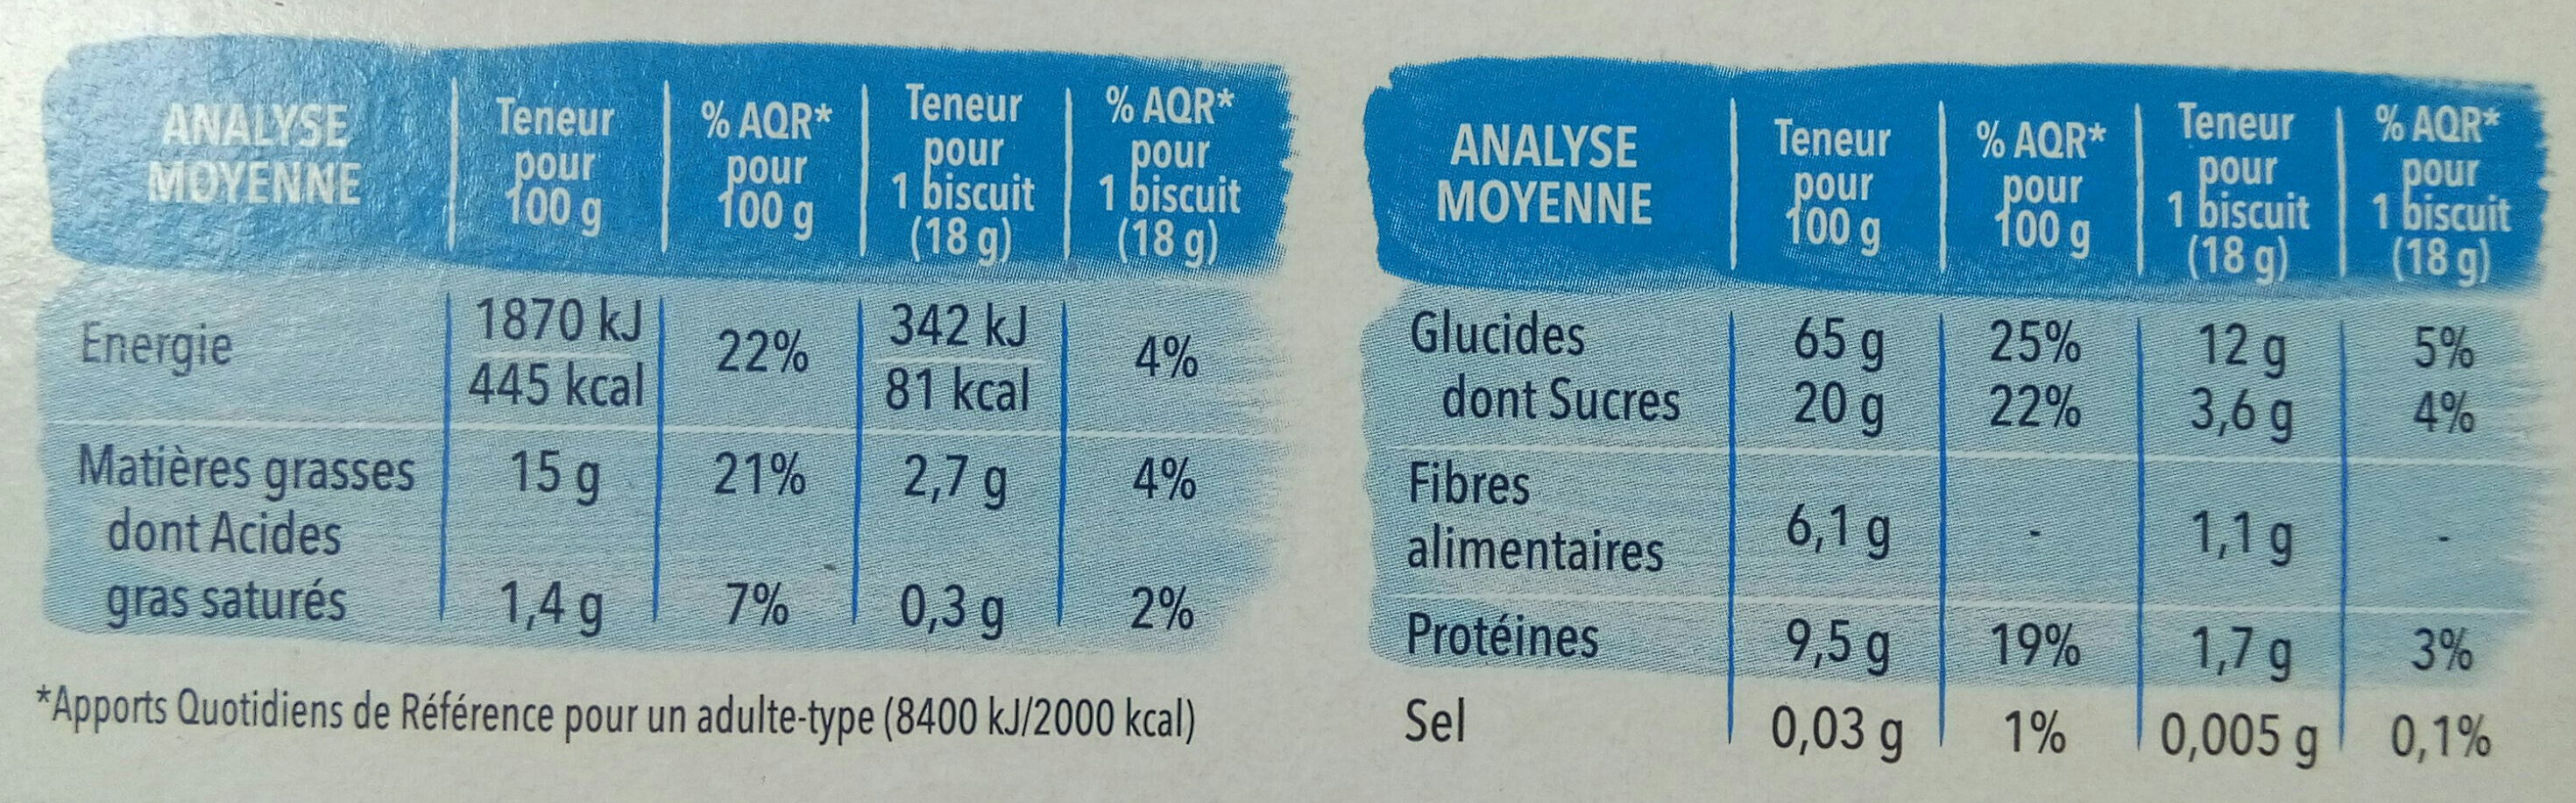 Goûter aux écorces  confites - Nutrition facts - fr